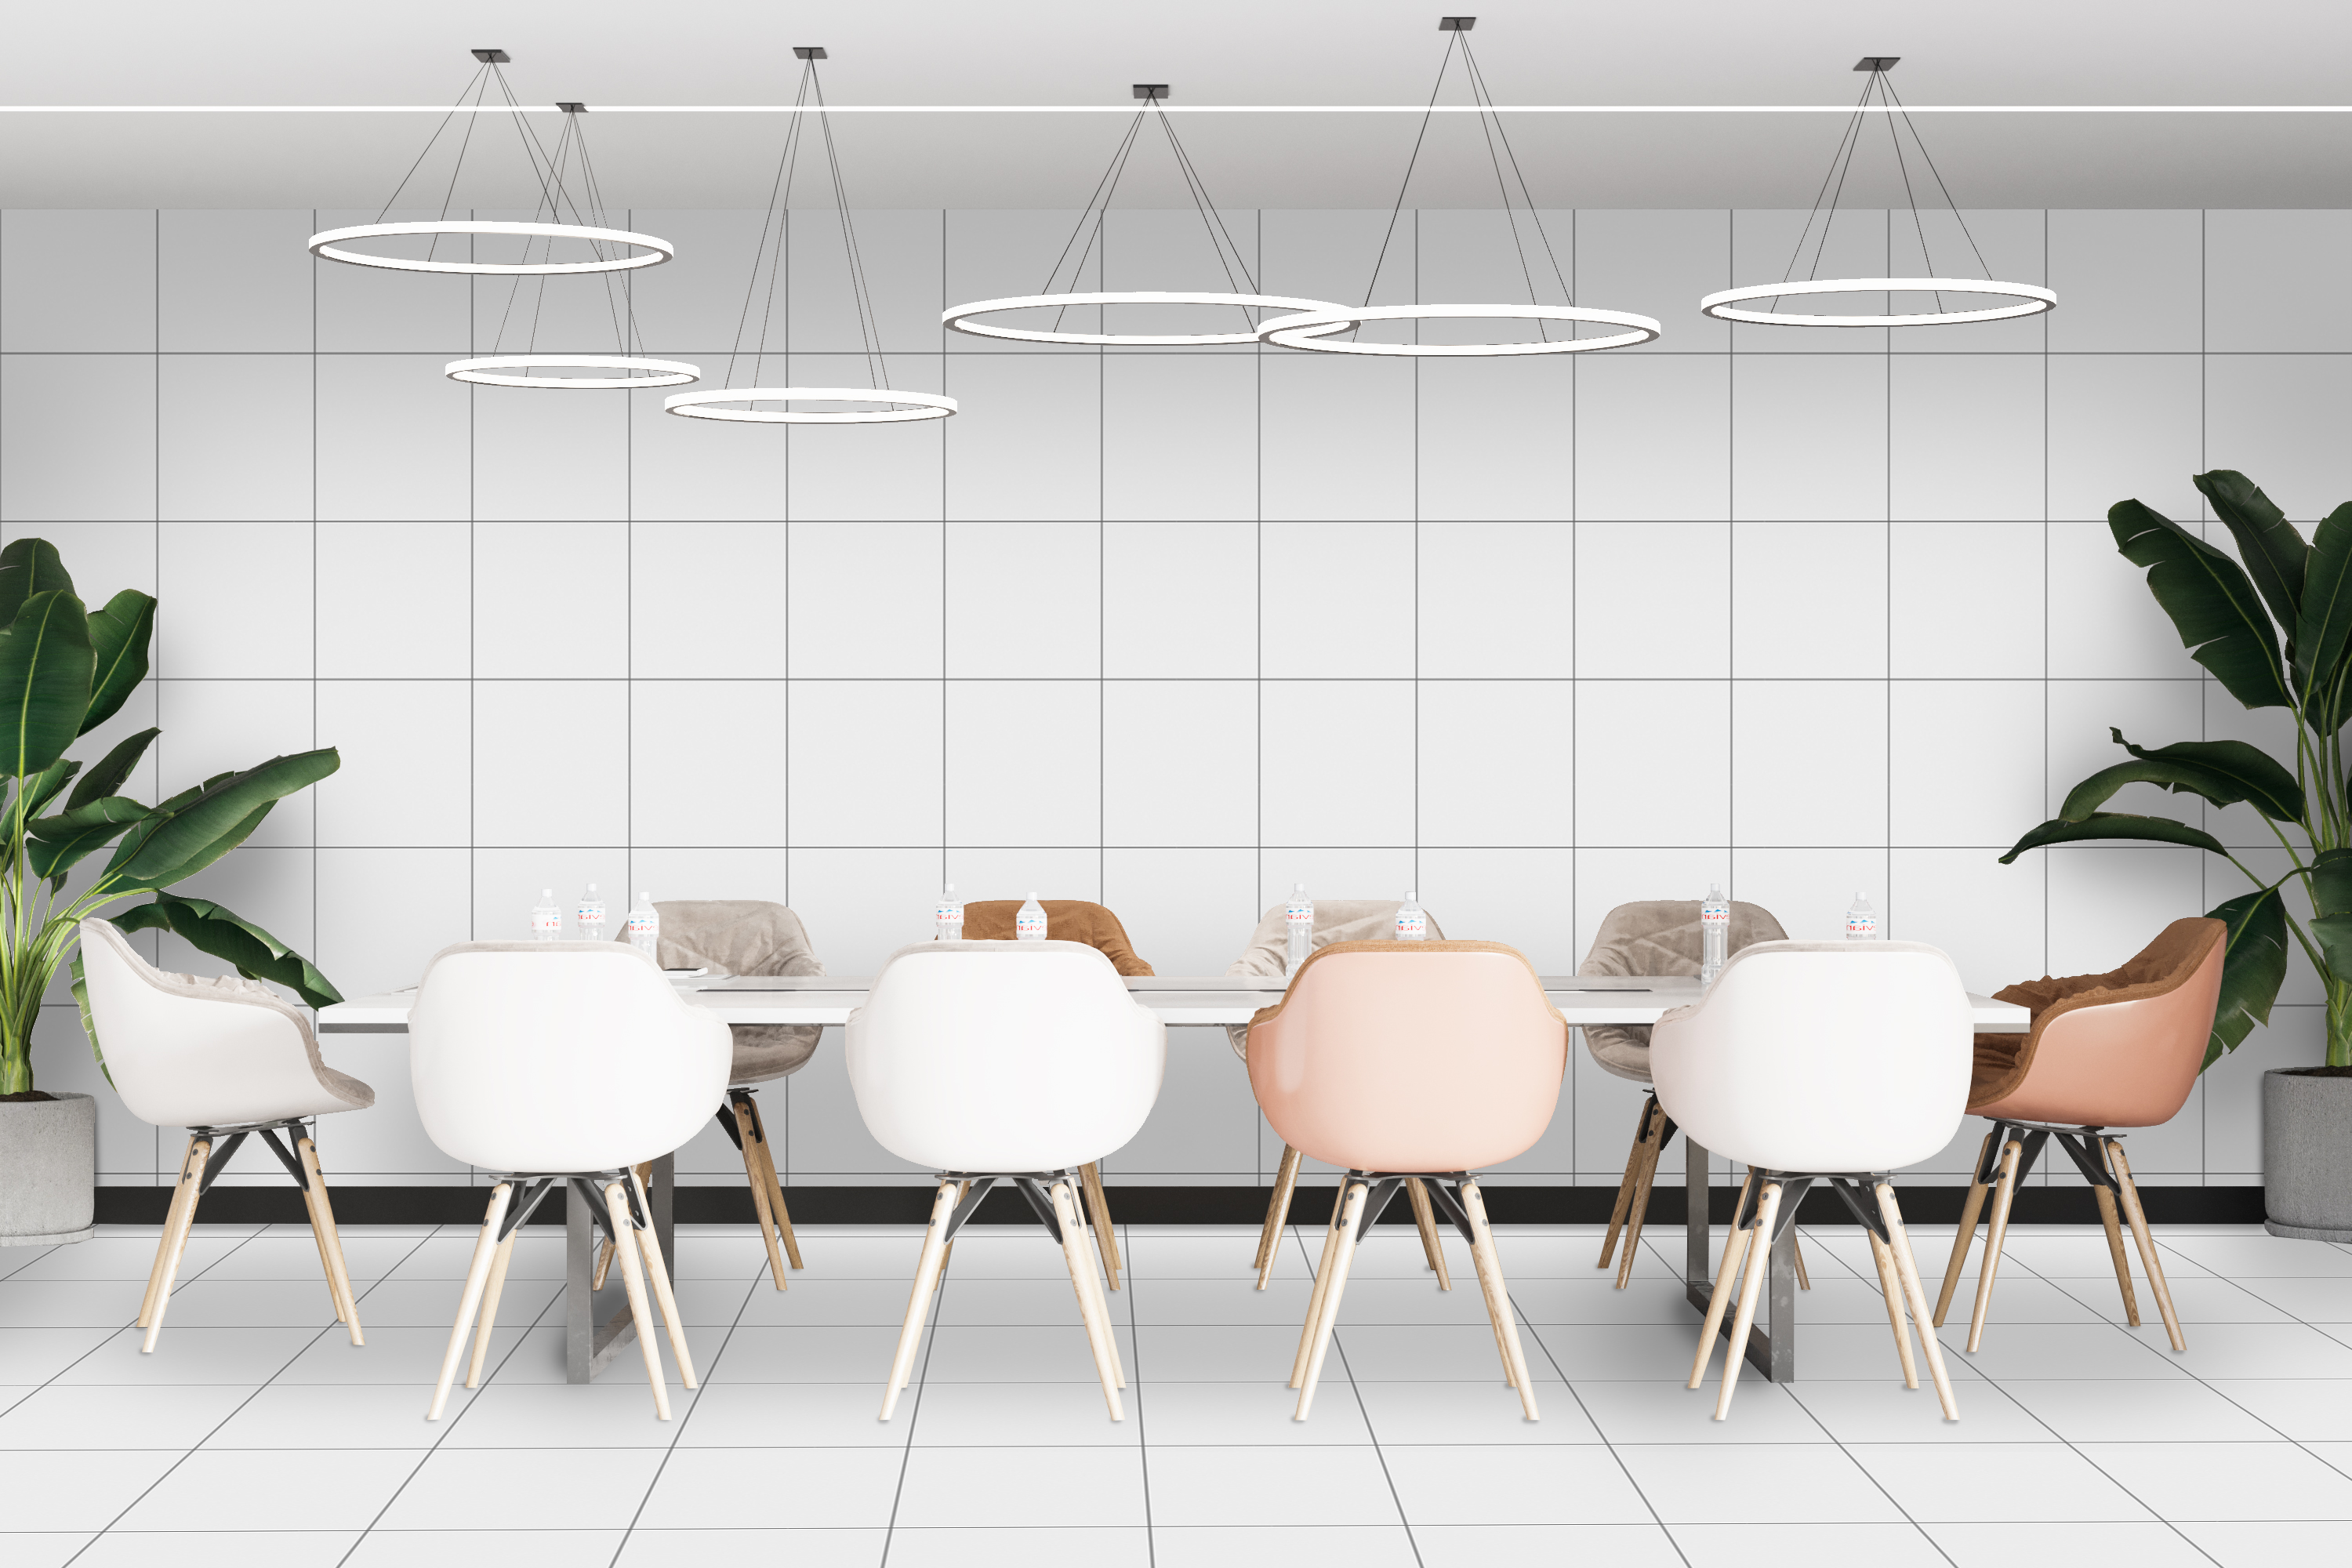 Rendi accogliente e produttiva la tua sala riunioni: crea il design perfetto con le nostre lastre in gres porcellanato